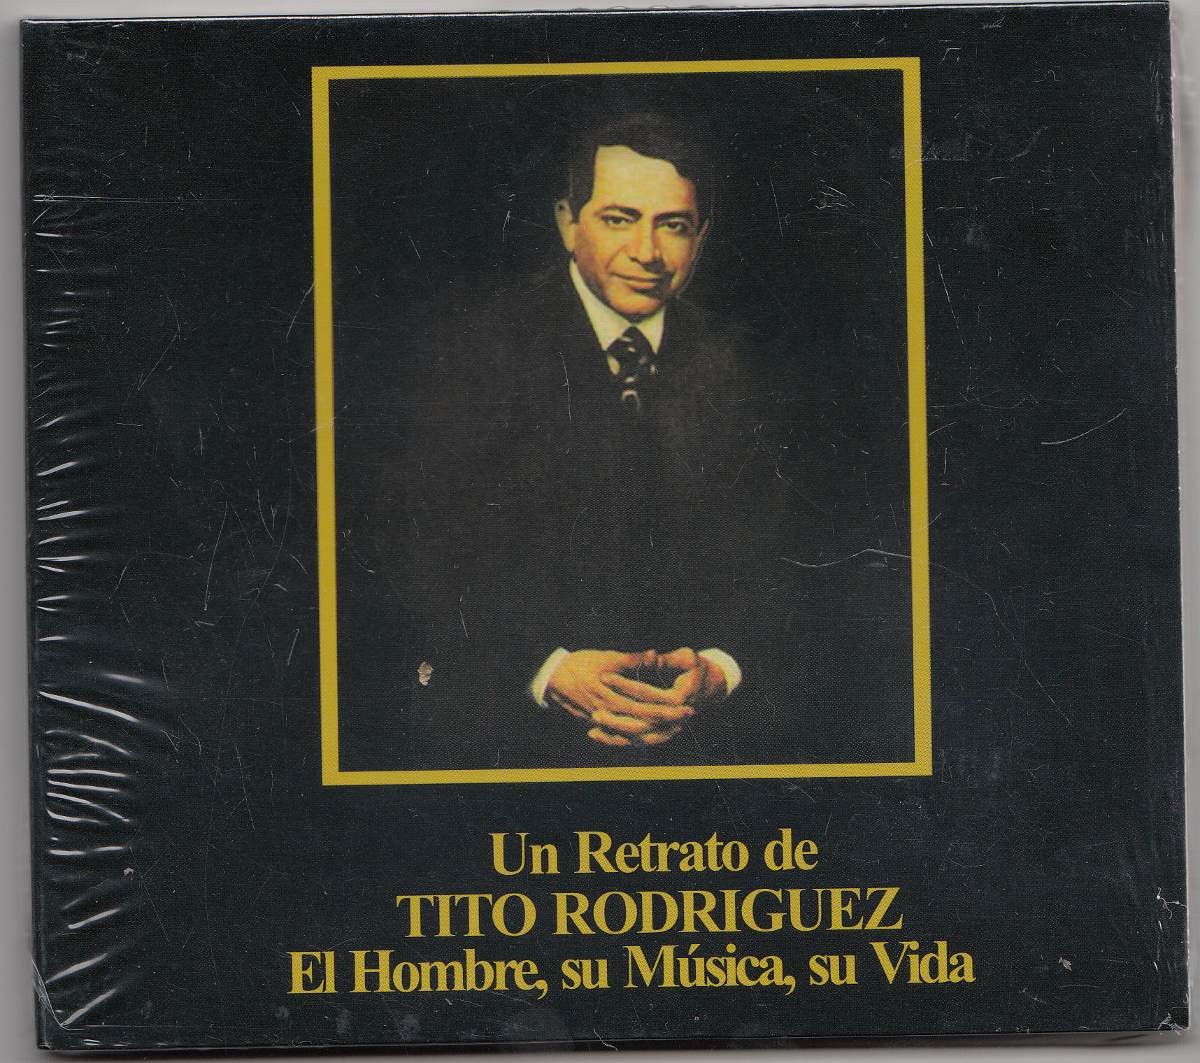 CD de Tito Rodríguez - Un retrato, el hombre, su música y su vida